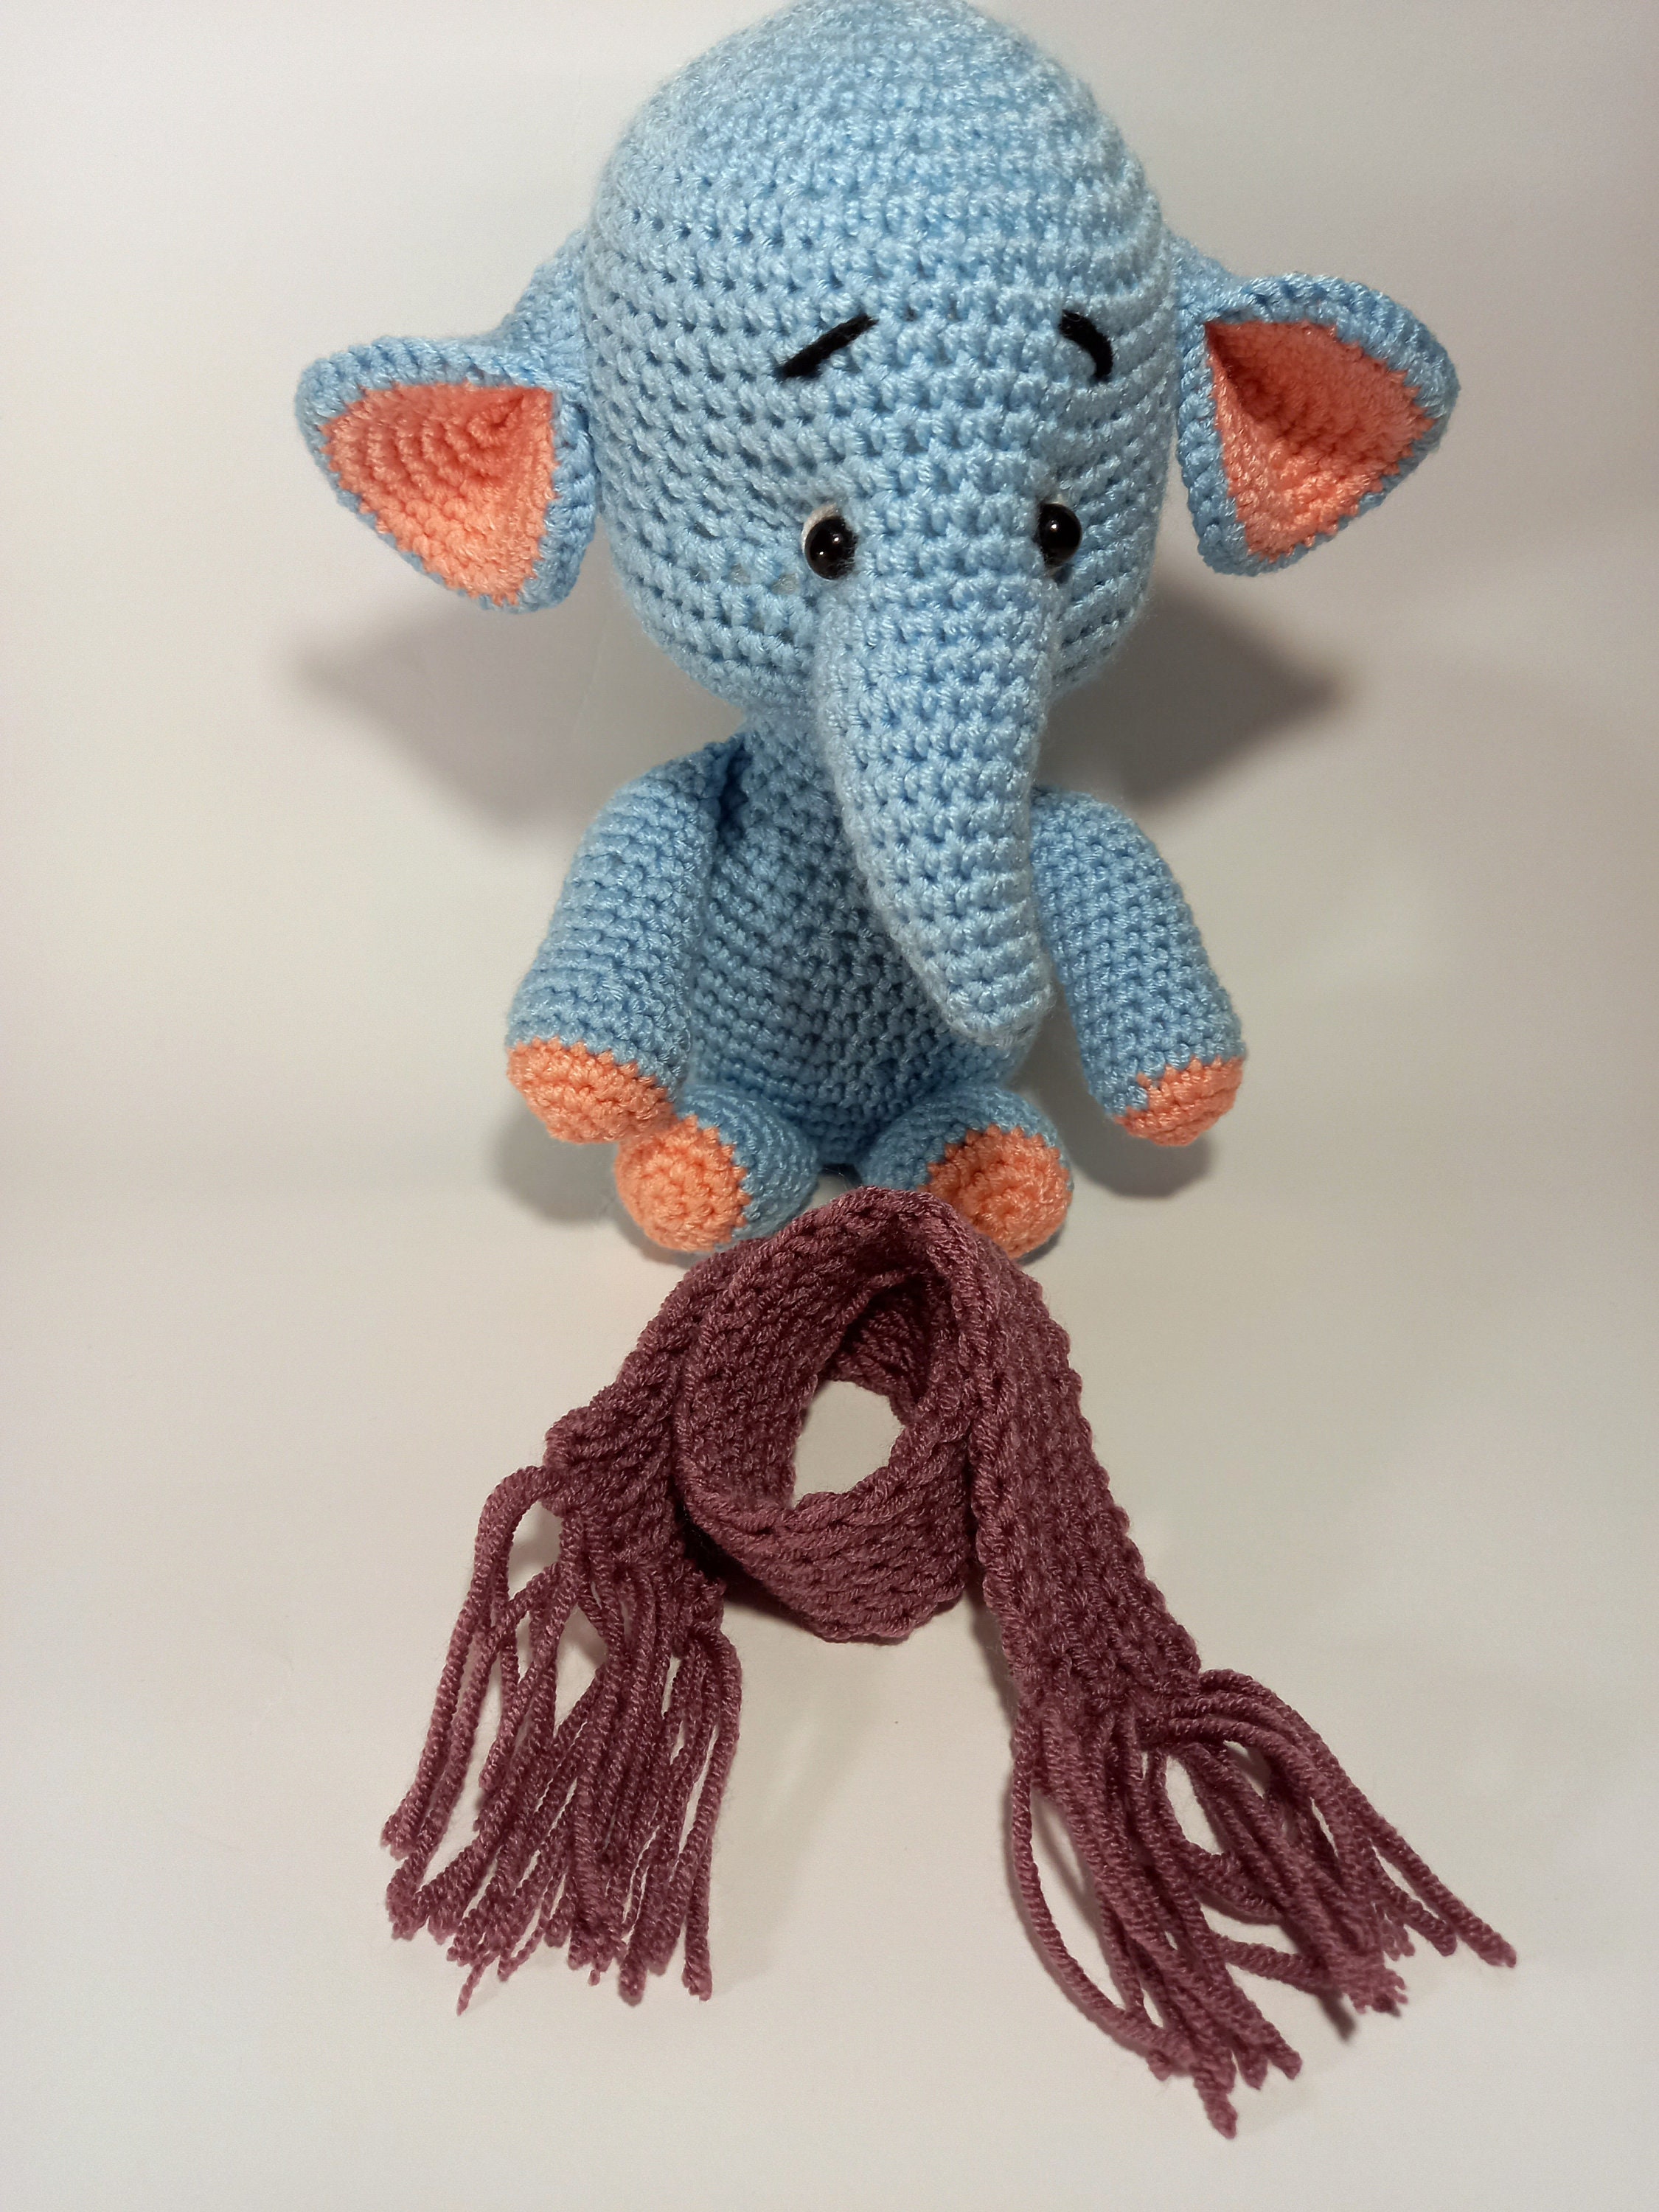 Crochet Elephant Stuffed Toy Crochet Animal Softy Toy - Etsy